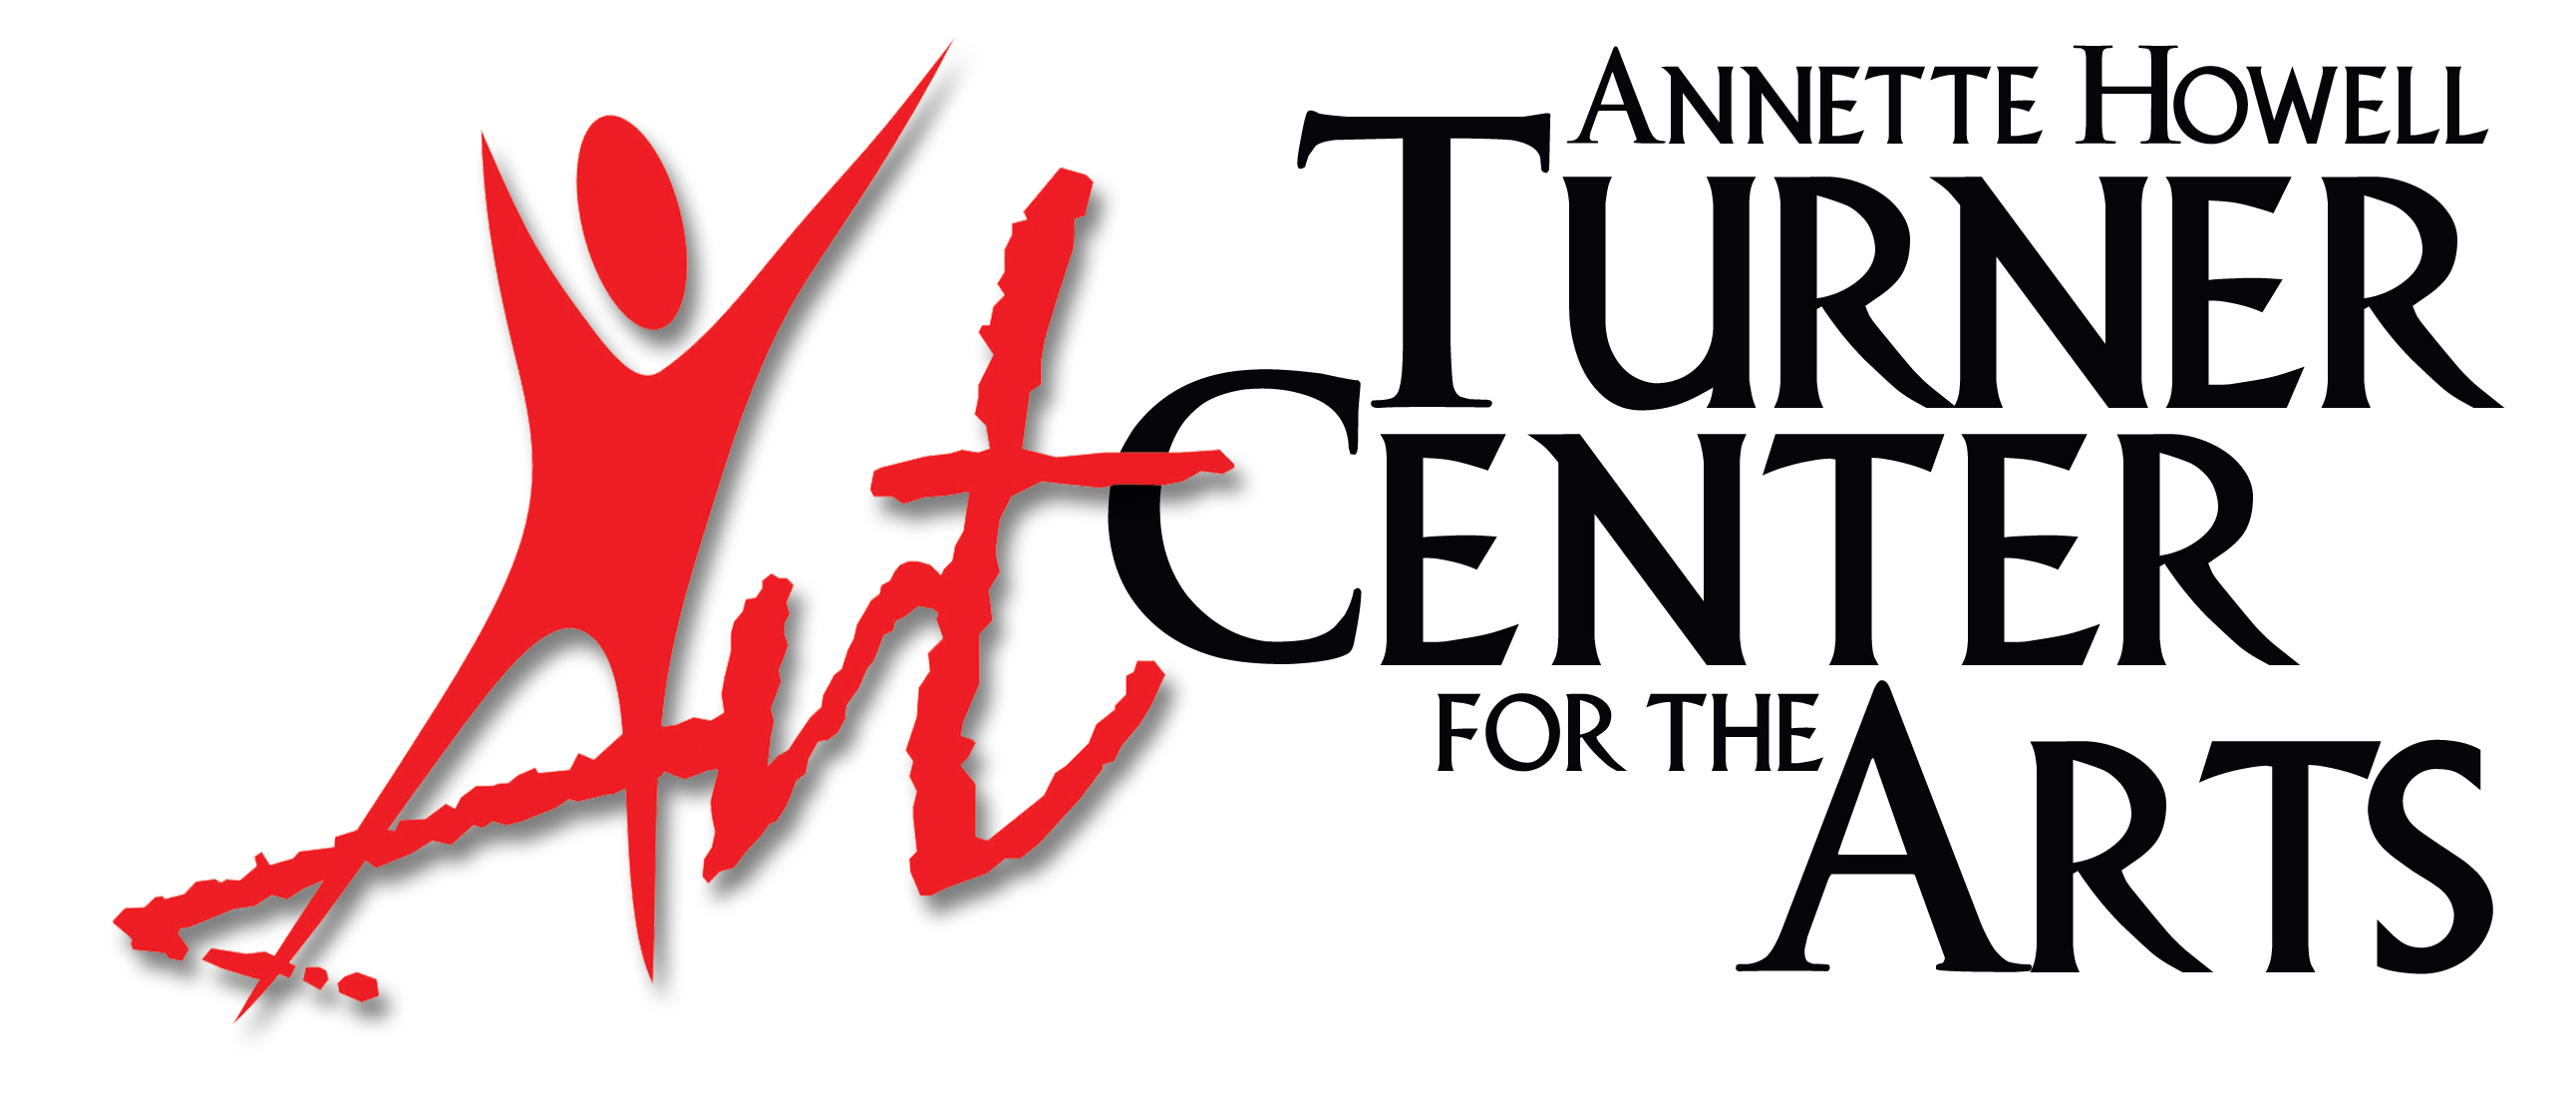 Annette Turner Howell Center for the Arts